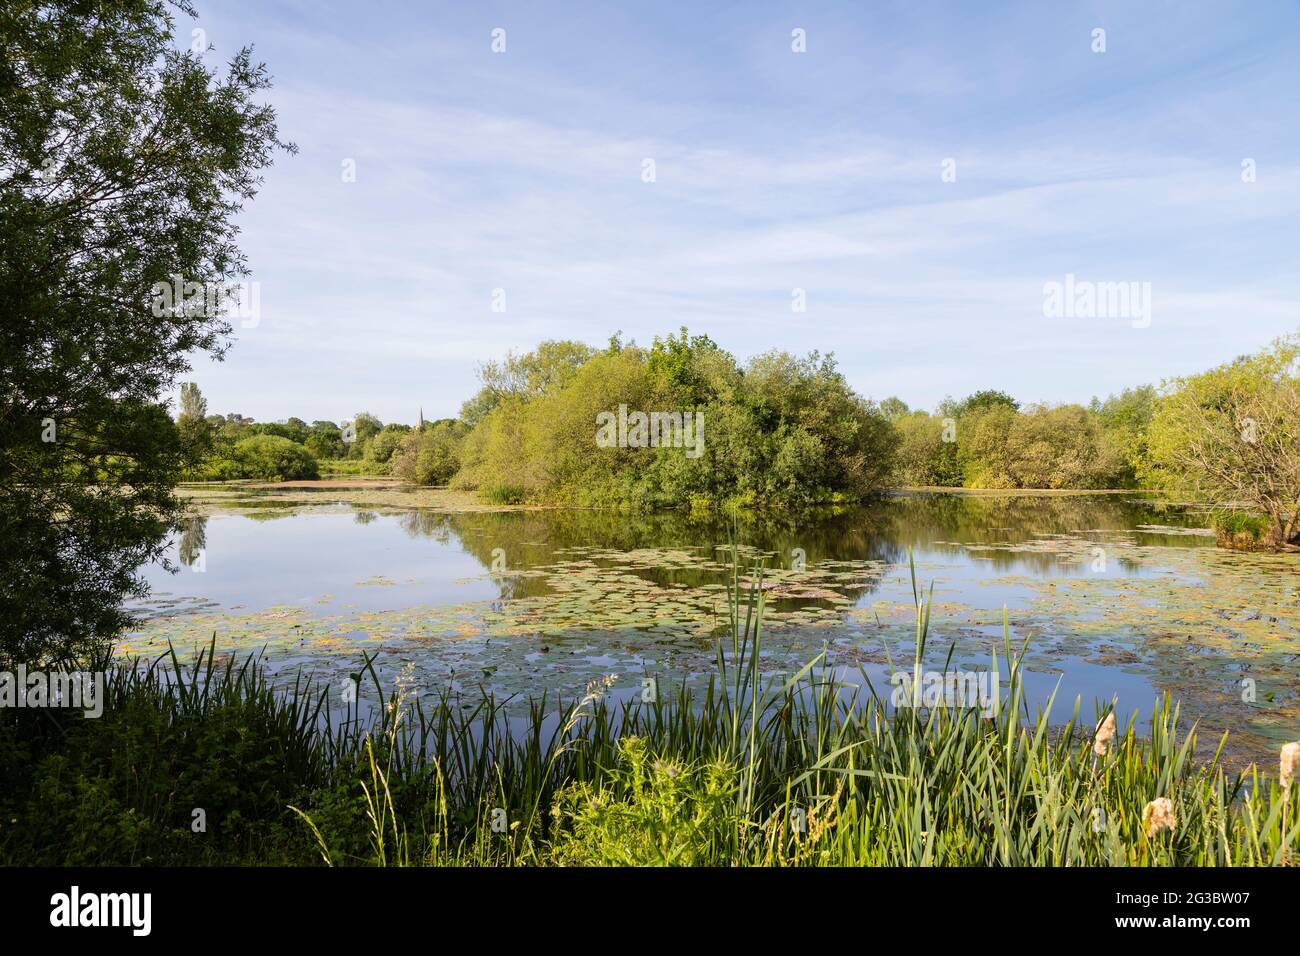 Una imagen de los hermosos lagos Frisby capturada en una brillante mañana de verano en Frisby on the Wreake, Leicestershire, Inglaterra, Reino Unido. Foto de stock